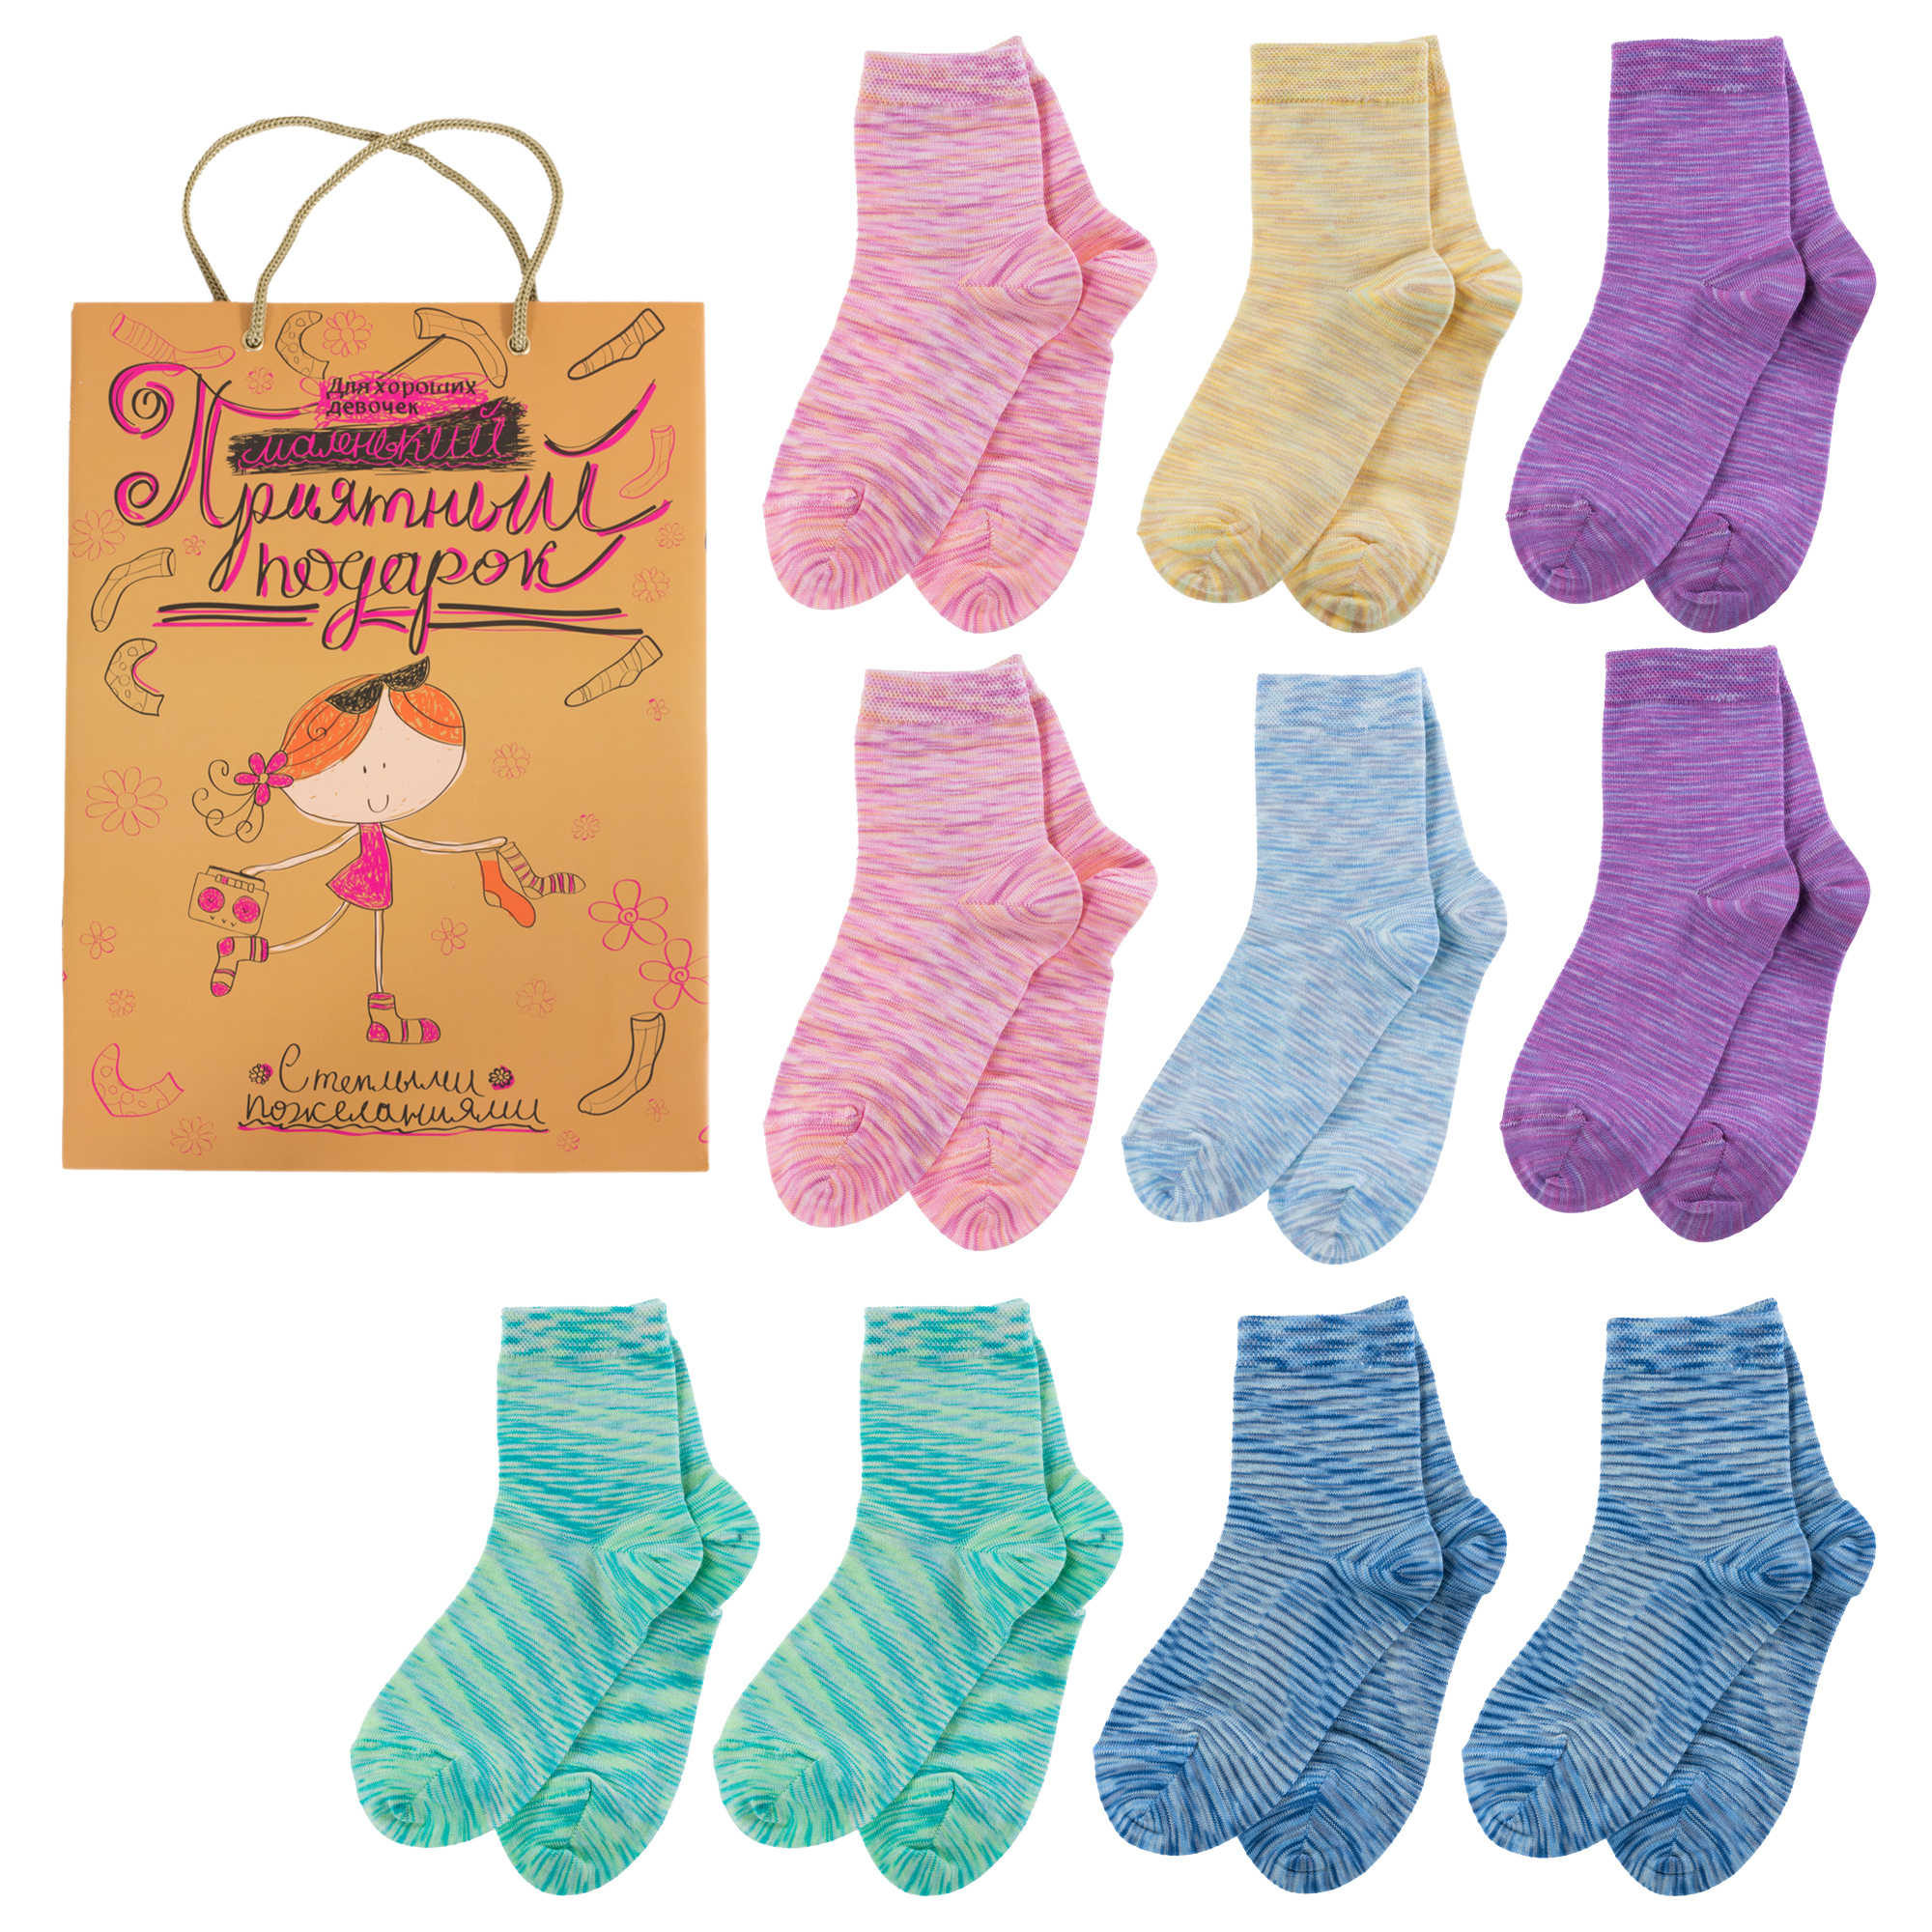 Носки для девочек LorenzLine Л106-10 цв. голуб; желт; розовый; синий; фиолетовый р. 41974 халат для девочек bio textiles nvkd цв фиолетовый р 146